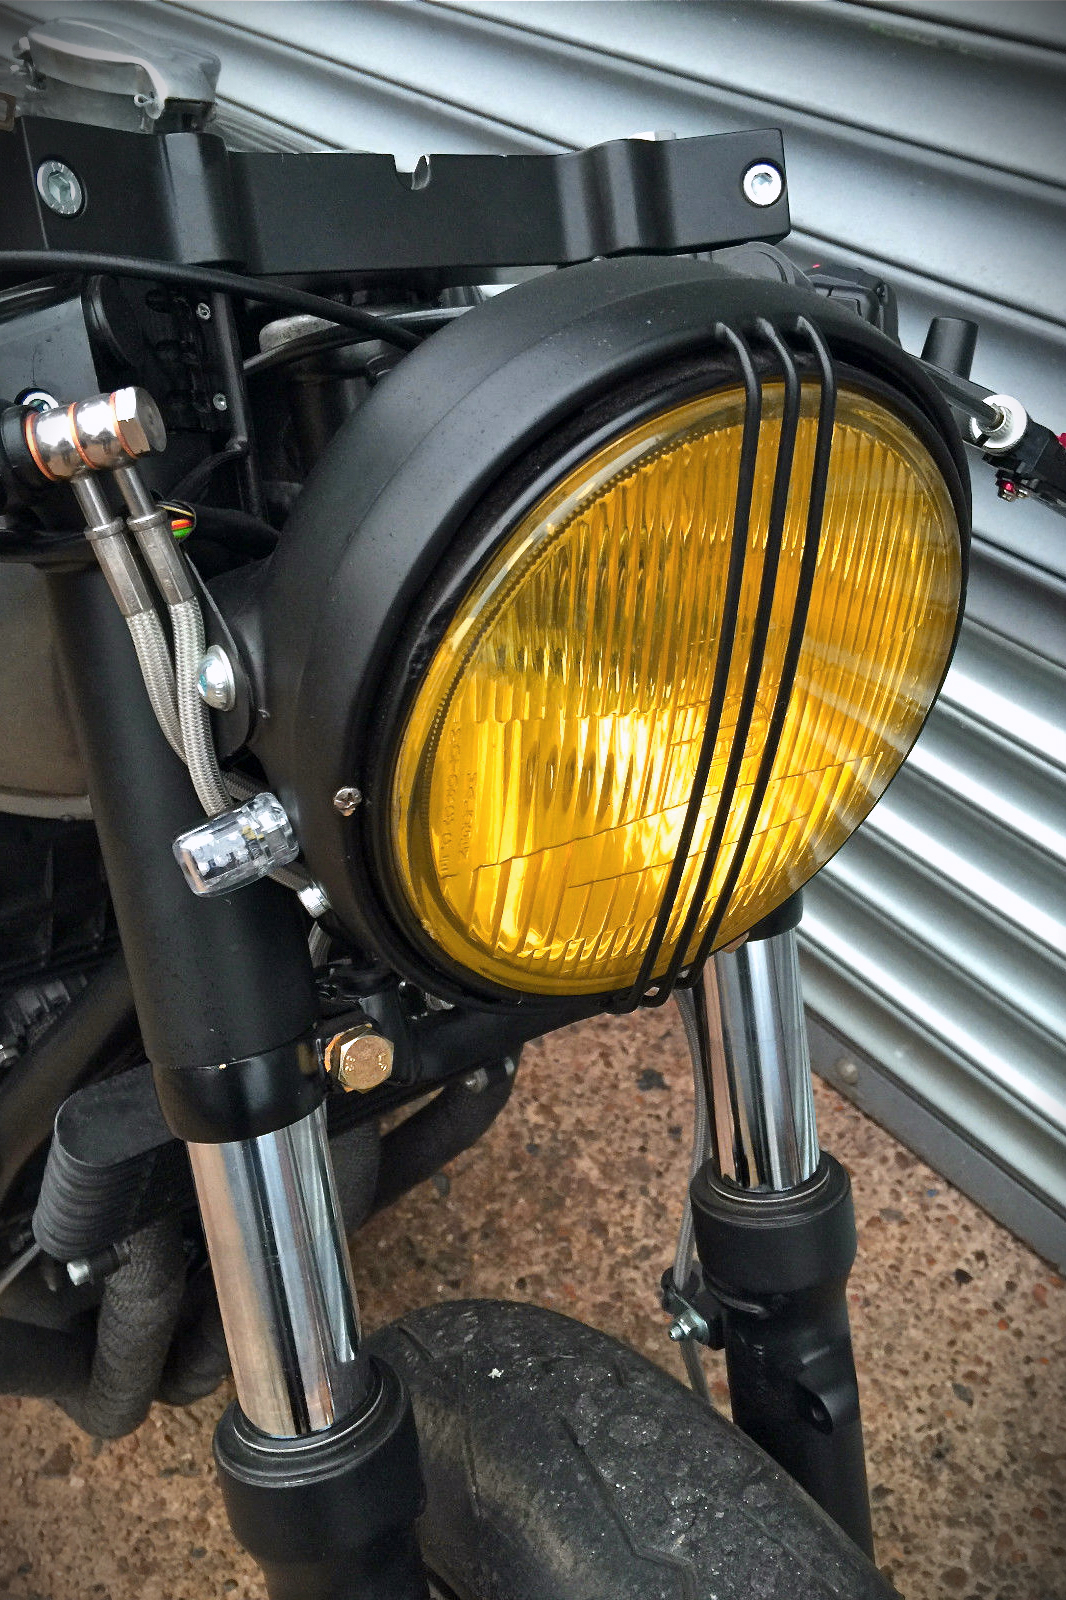 6669円 未使用品 SYLM にとって ADV150 ADV 150 2019 2020バイクヘッドライトガードオートバイヘッドライトグリルヘッドライトカバー ヘッドライトグリル保護カバー